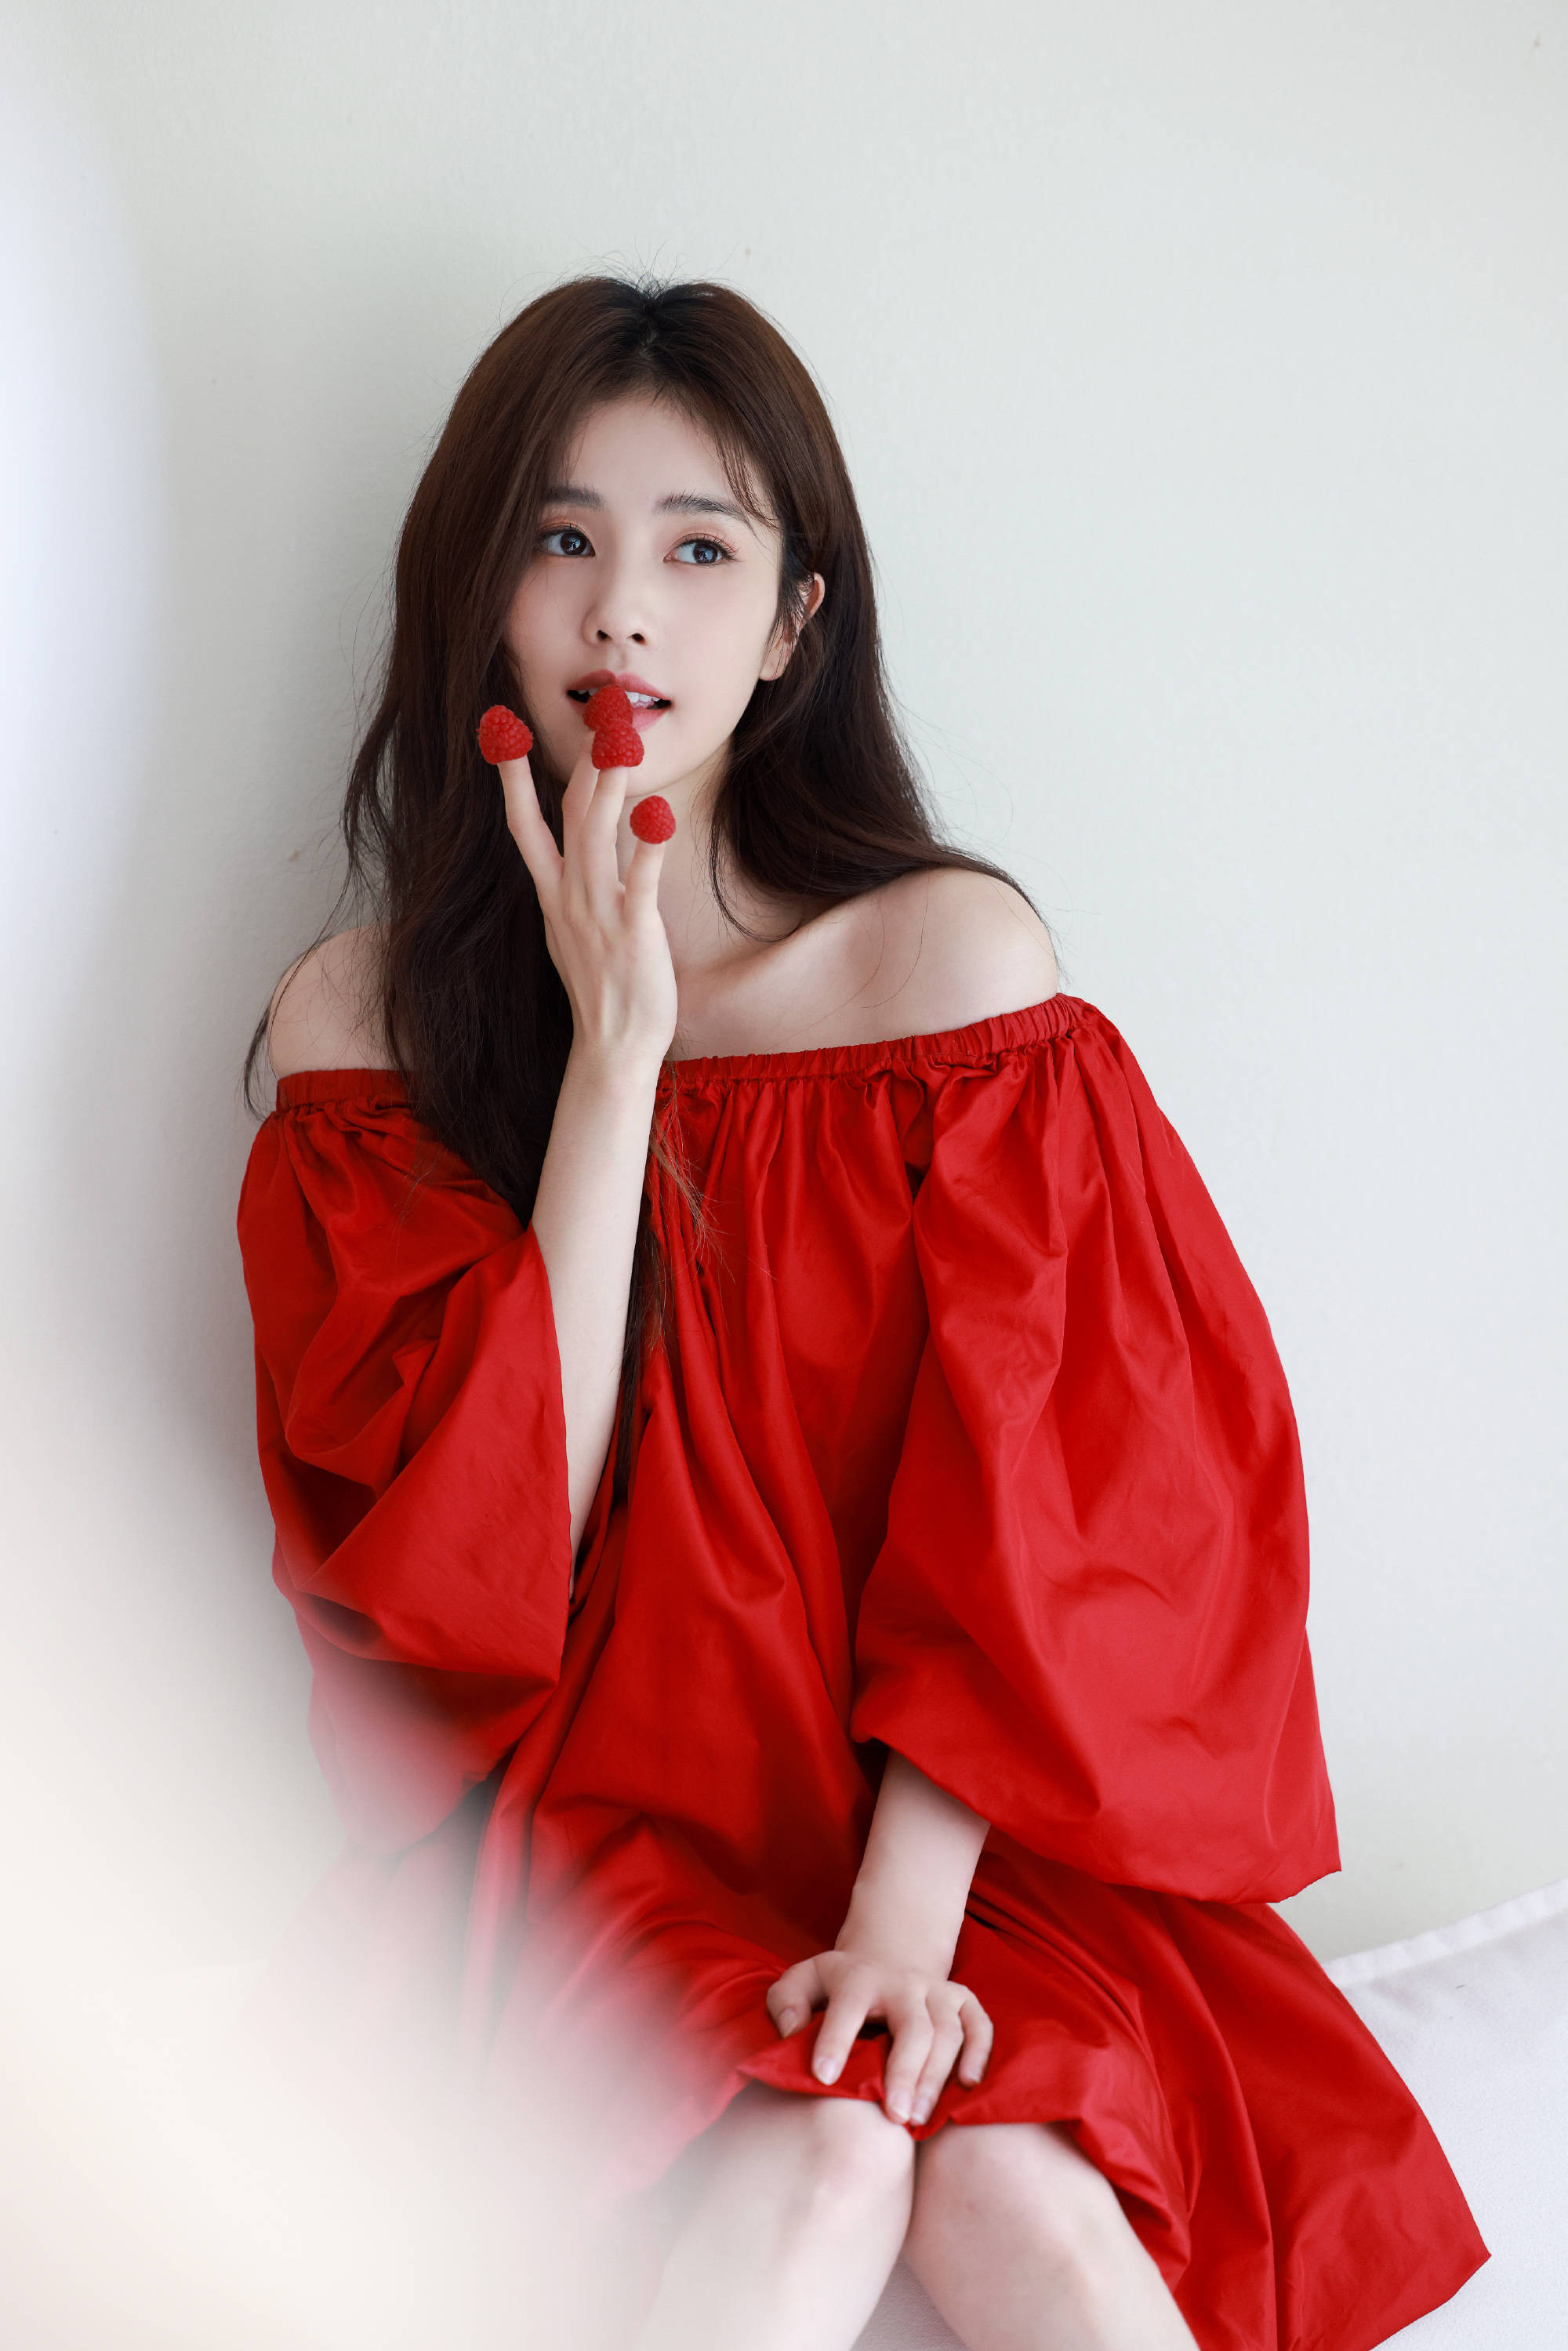 红裙丽影 [20P] - 美女贴图 - 华声论坛